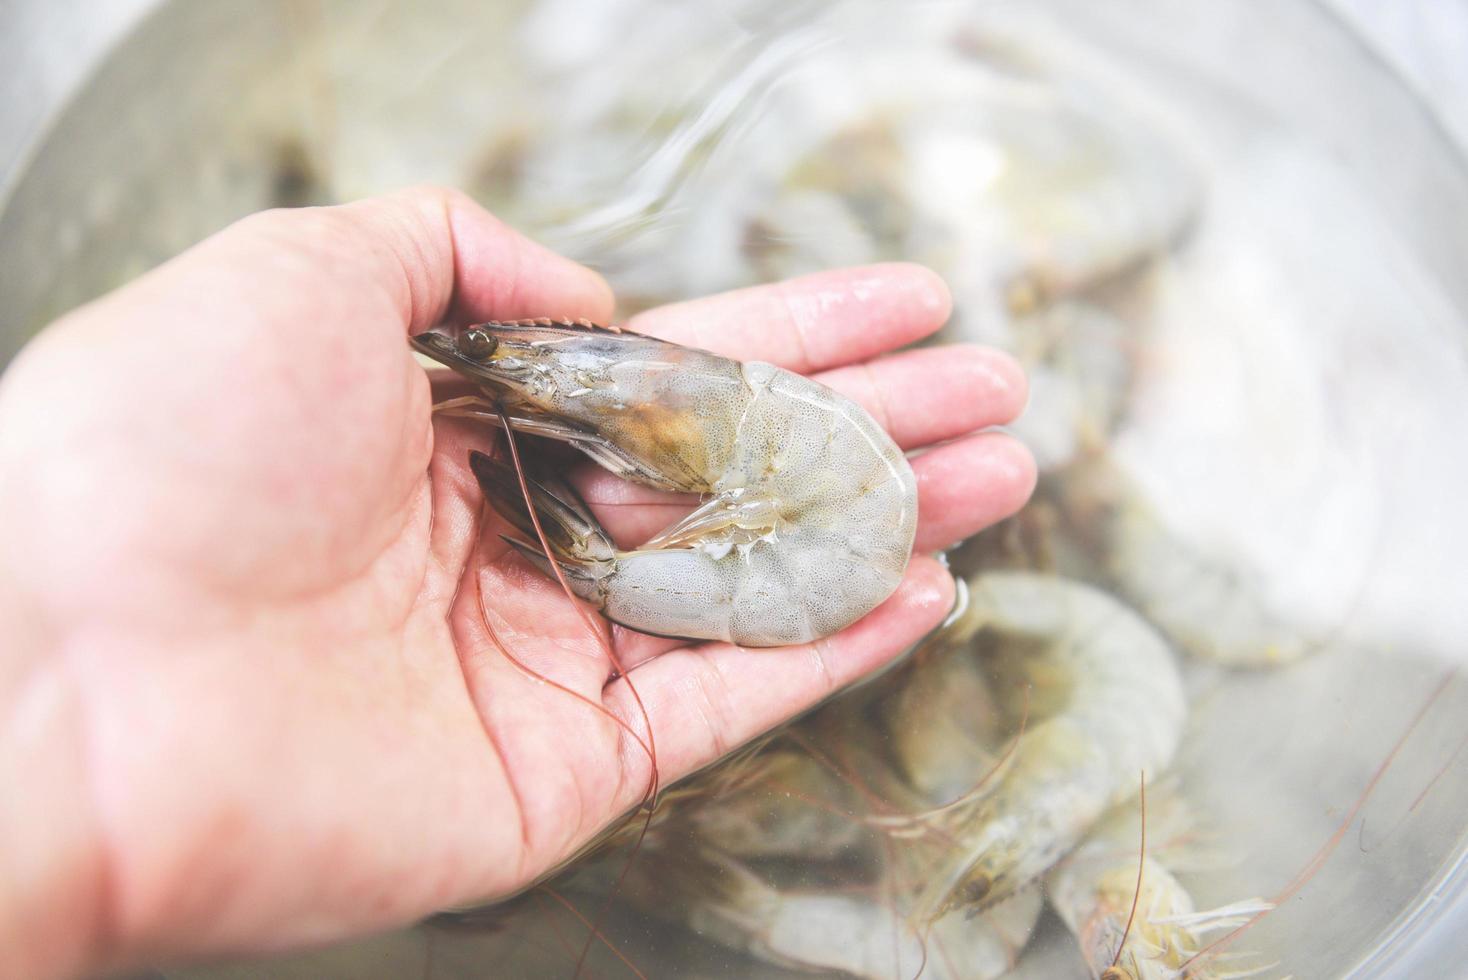 verse garnalen in de hand voor het koken van zeevruchten - rauwe garnalengarnalen foto